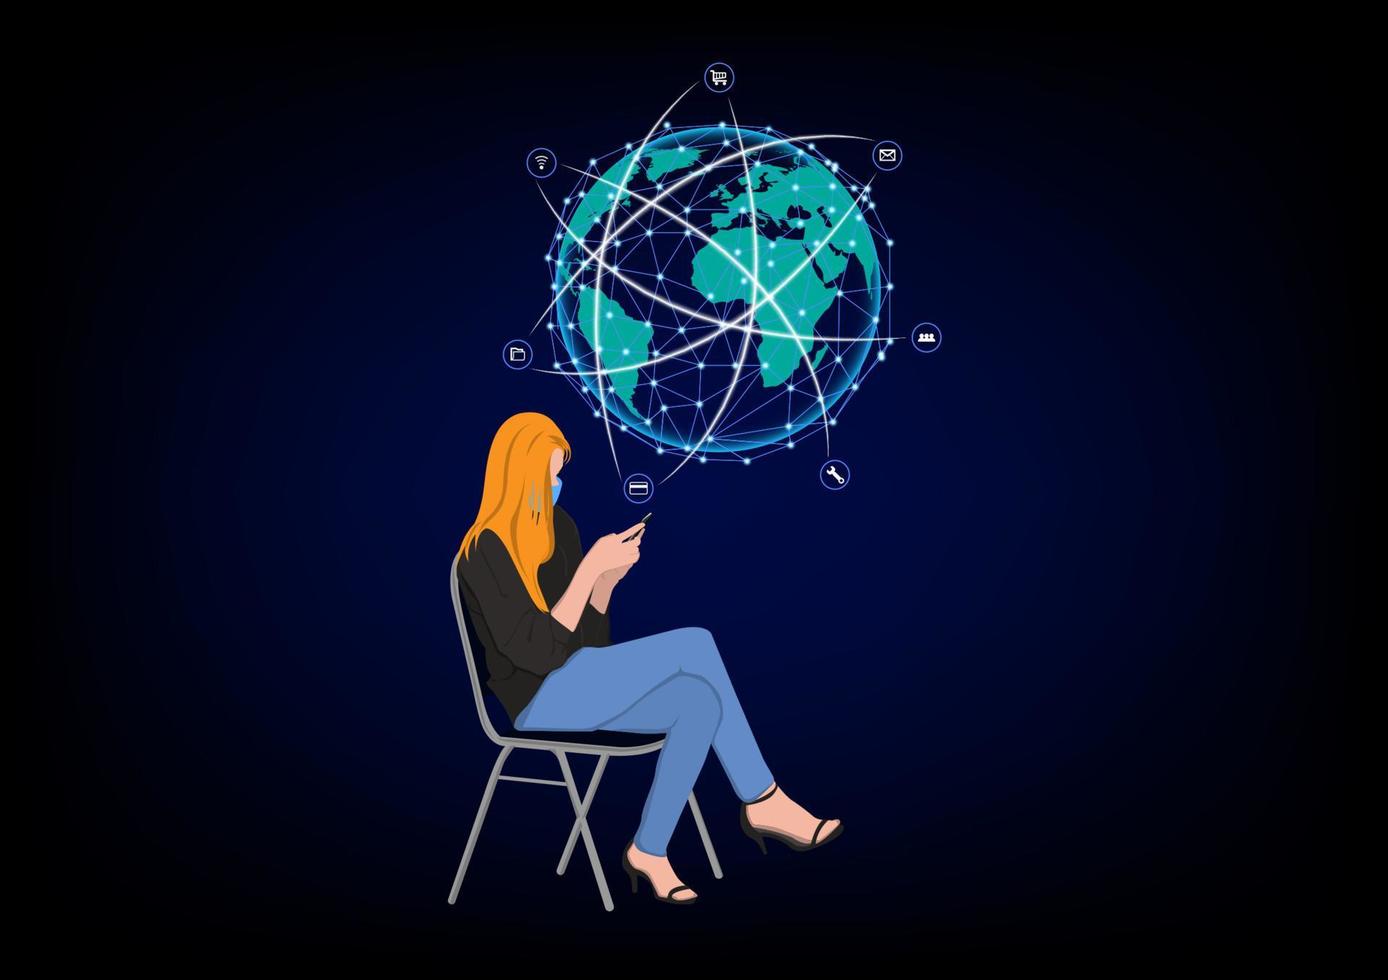 geschäftsfrau sitzt auf stuhl und nutzt smartphone für verbindungstechnik, konzept mit smartphone für verbindung zur globalen netzwerkverbindung vektor